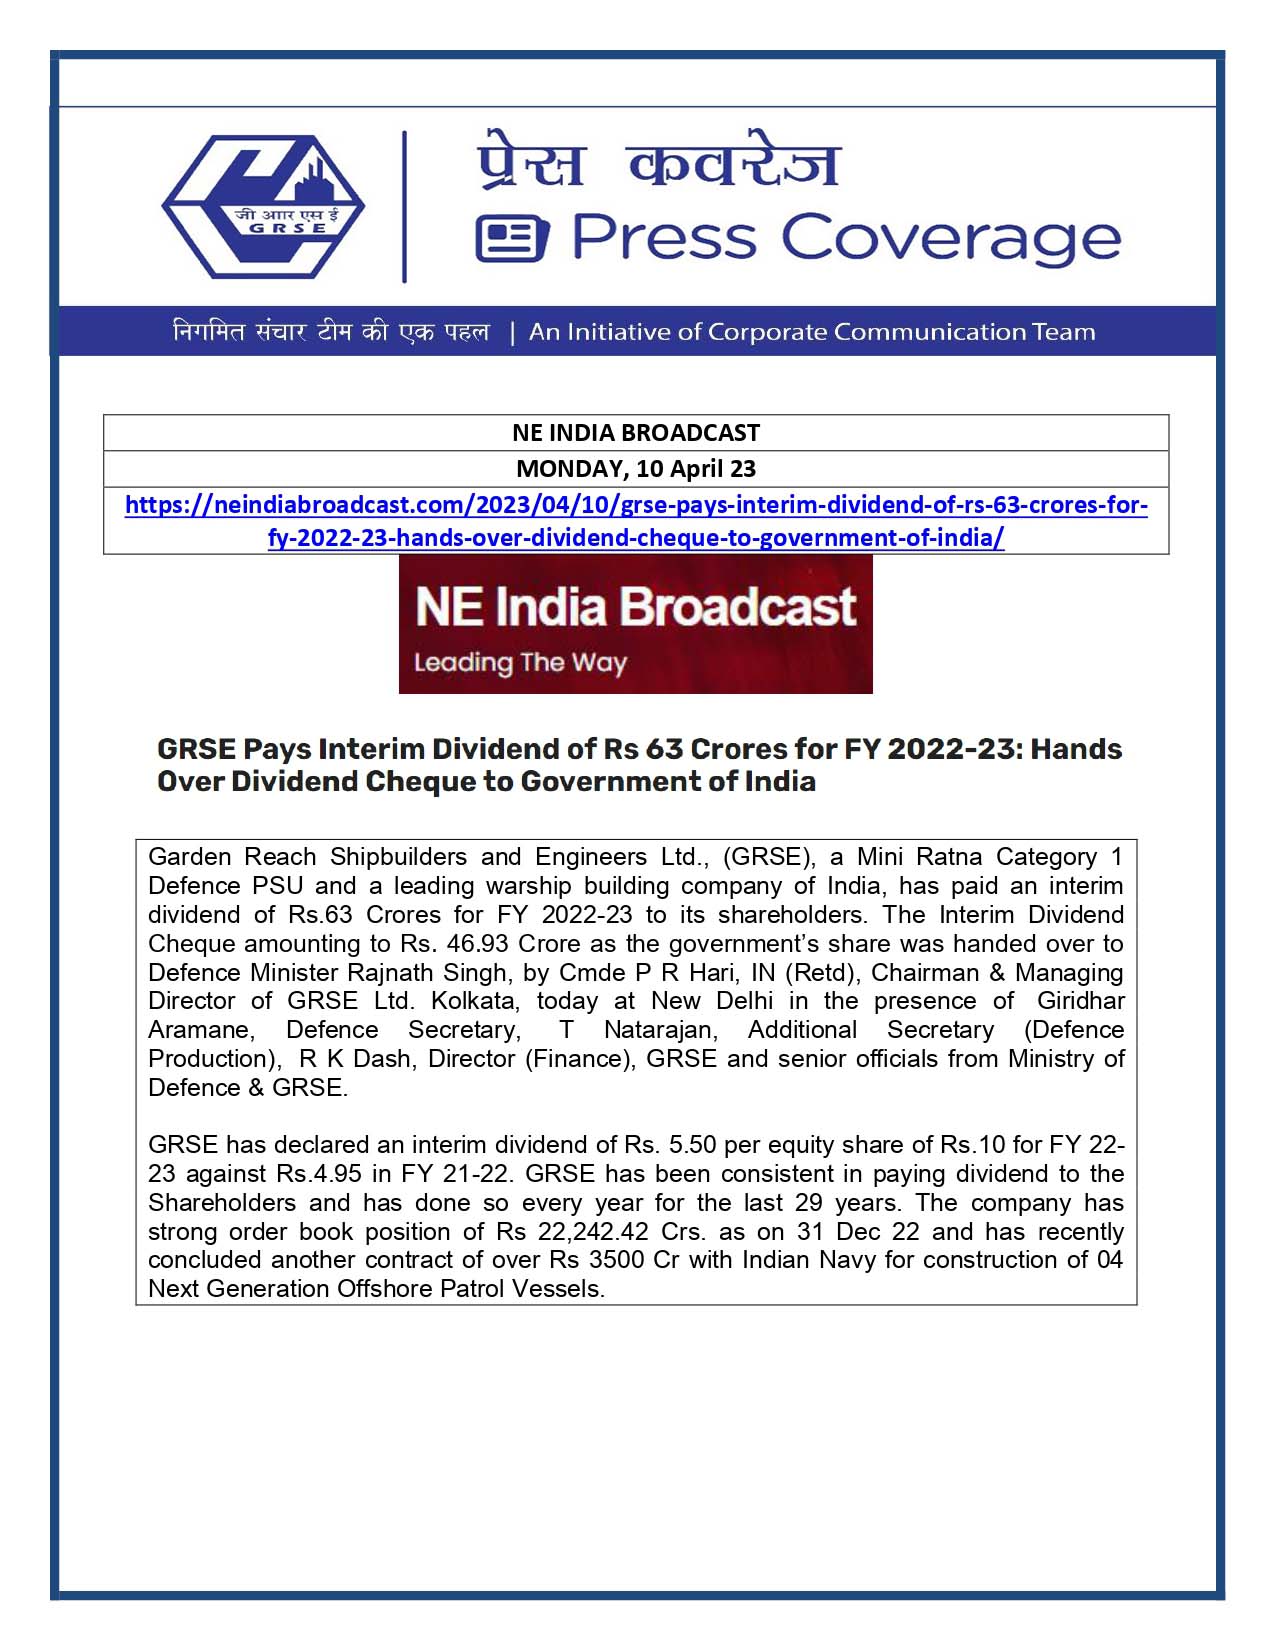 NE India Broadcast 10 Apr 23